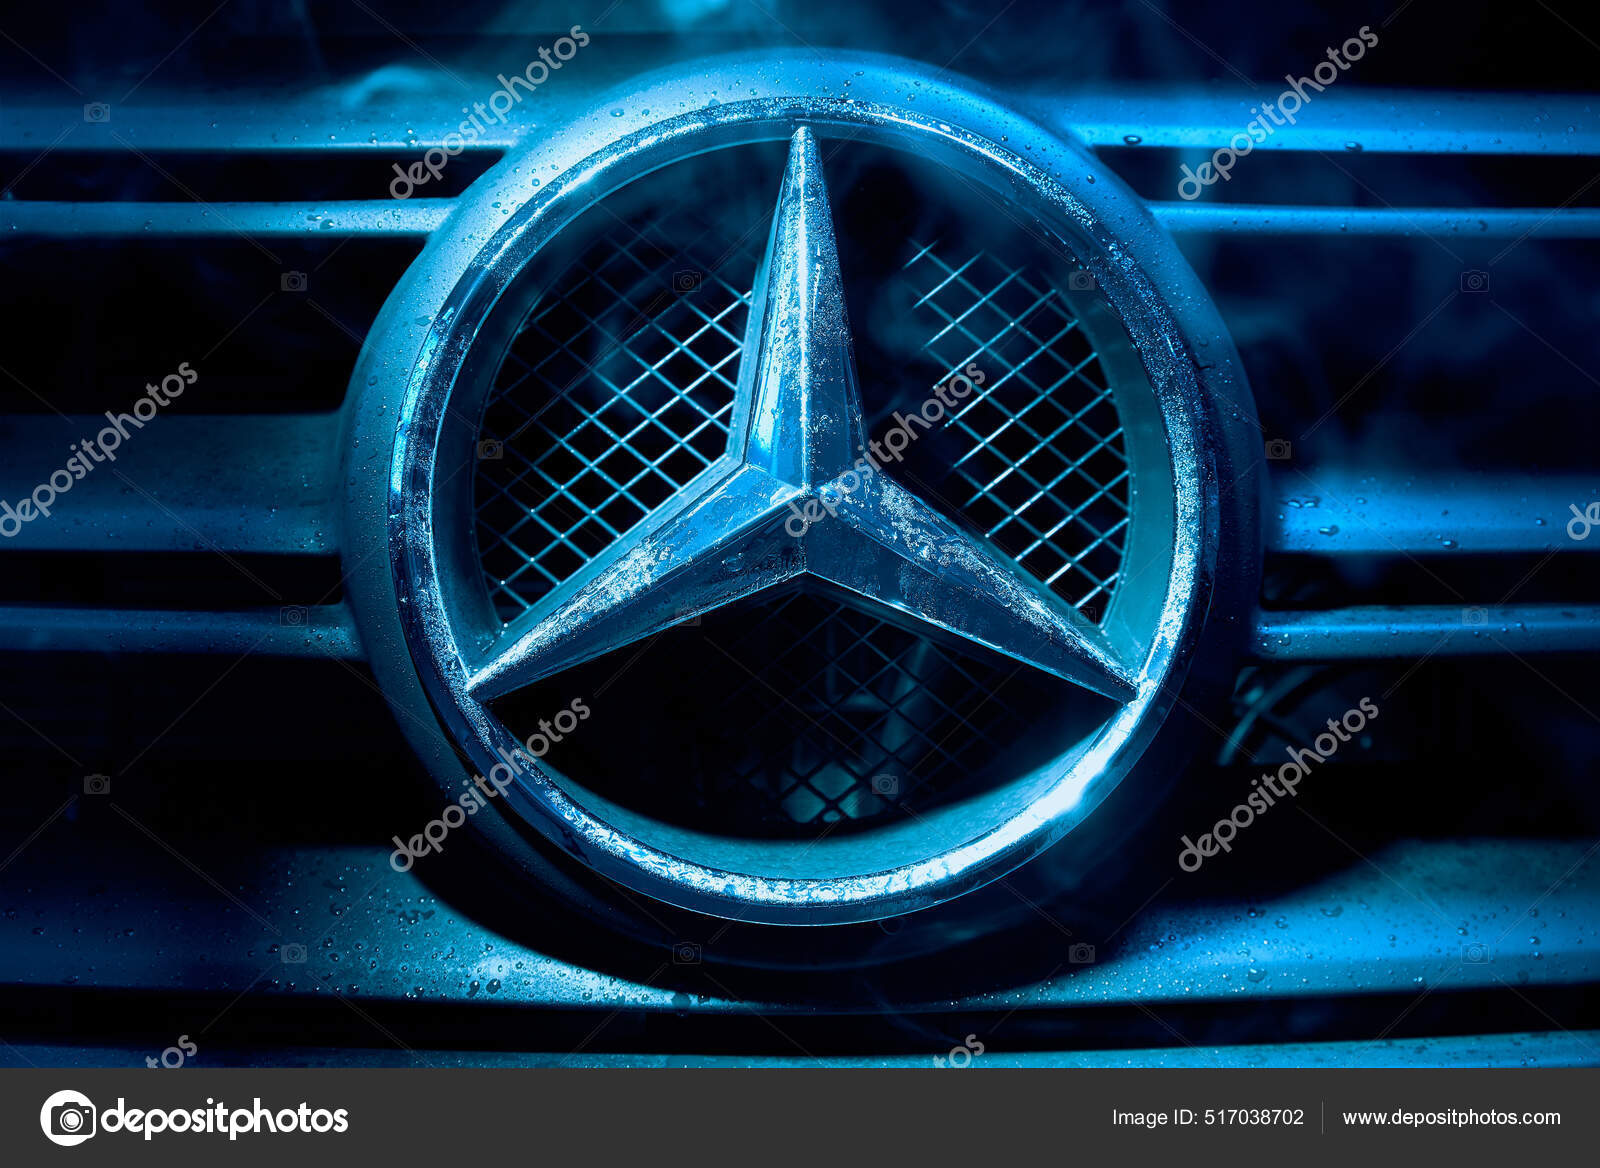 https://st.depositphotos.com/4061757/51703/i/1600/depositphotos_517038702-stock-photo-mercedes-car-logo-close.jpg